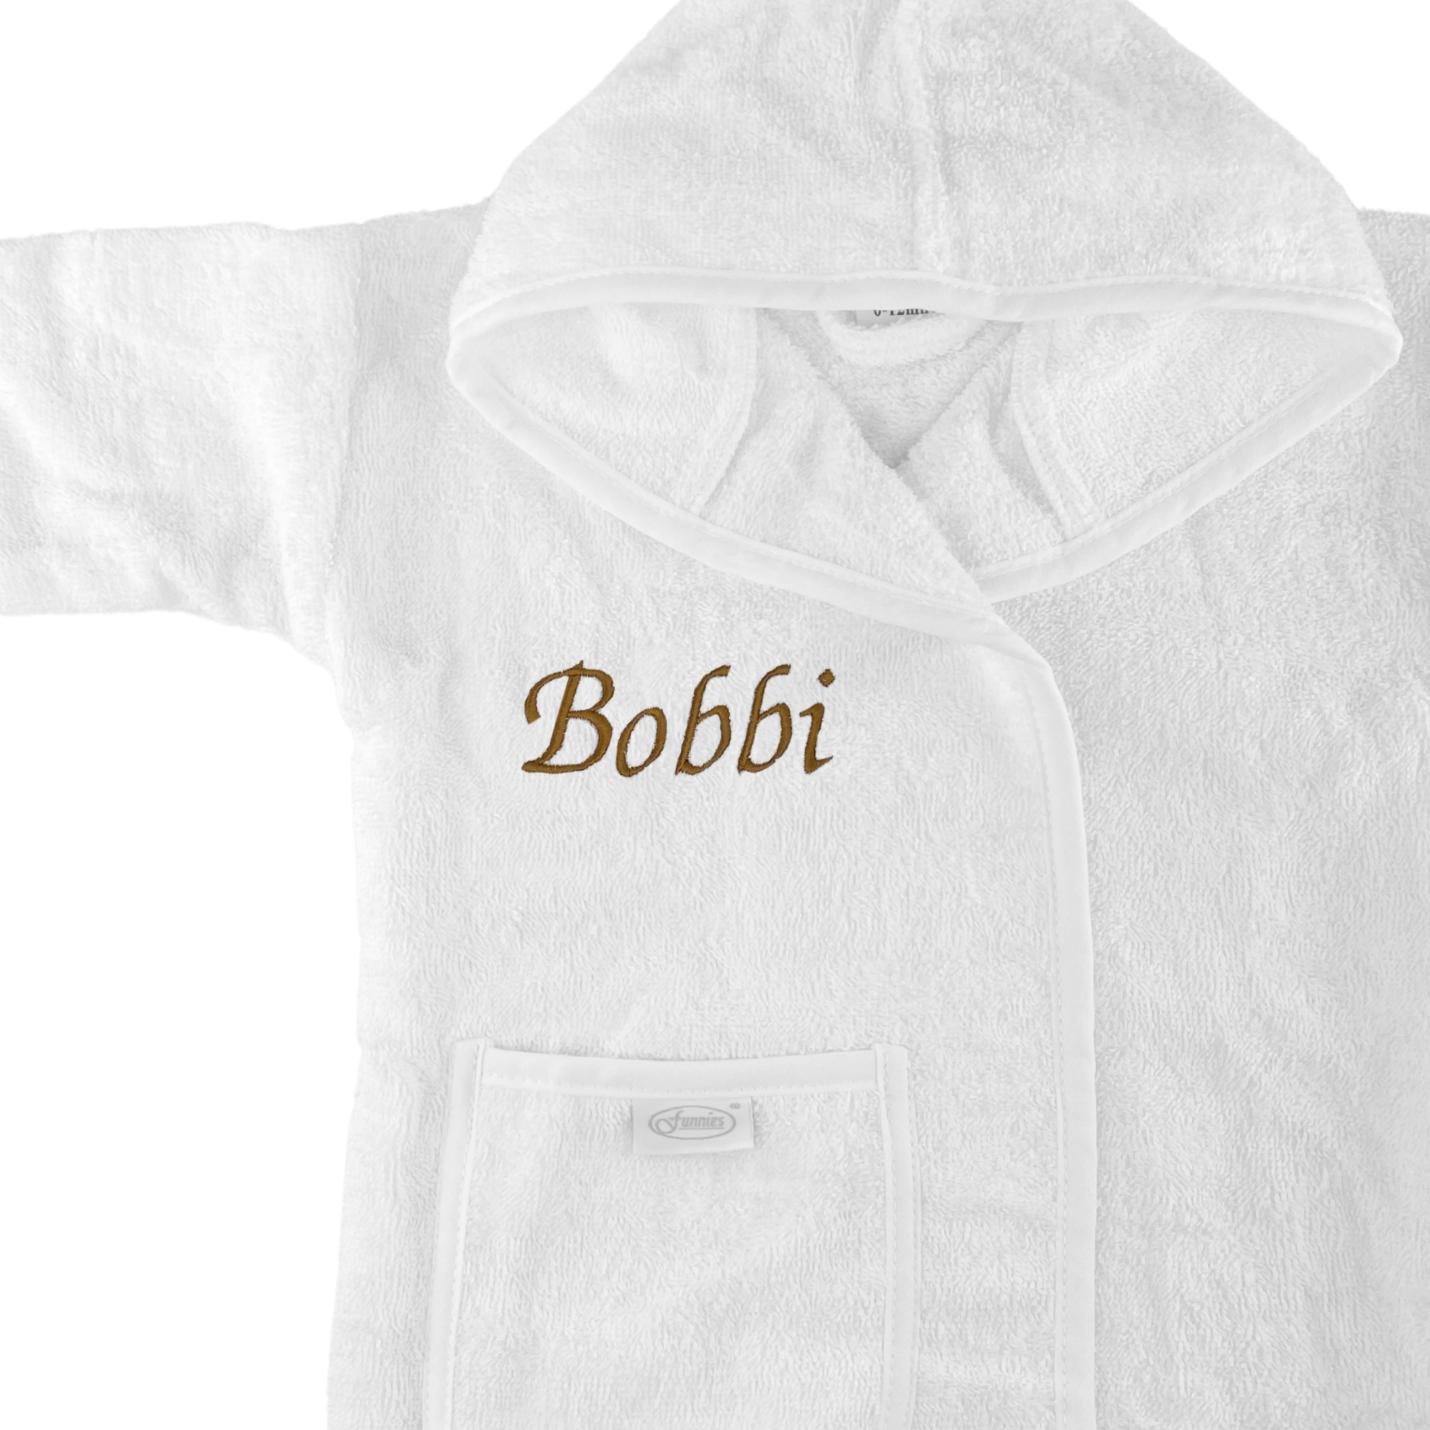 Baby badjas met naam | 1-2 jaar - Wit